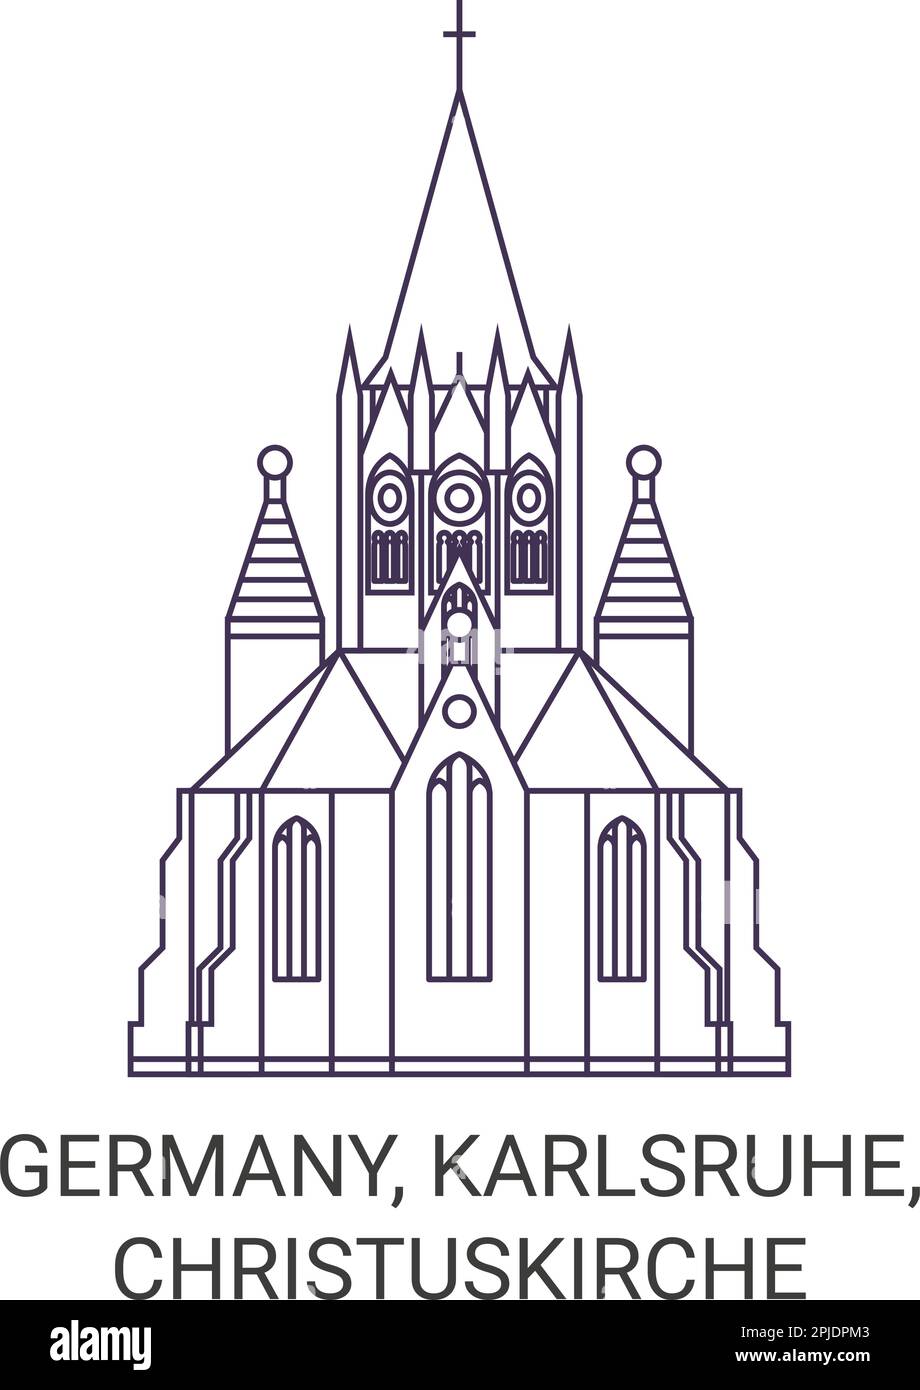 Germany, Karlsruhe, Christuskirche travel landmark vector illustration Stock Vector